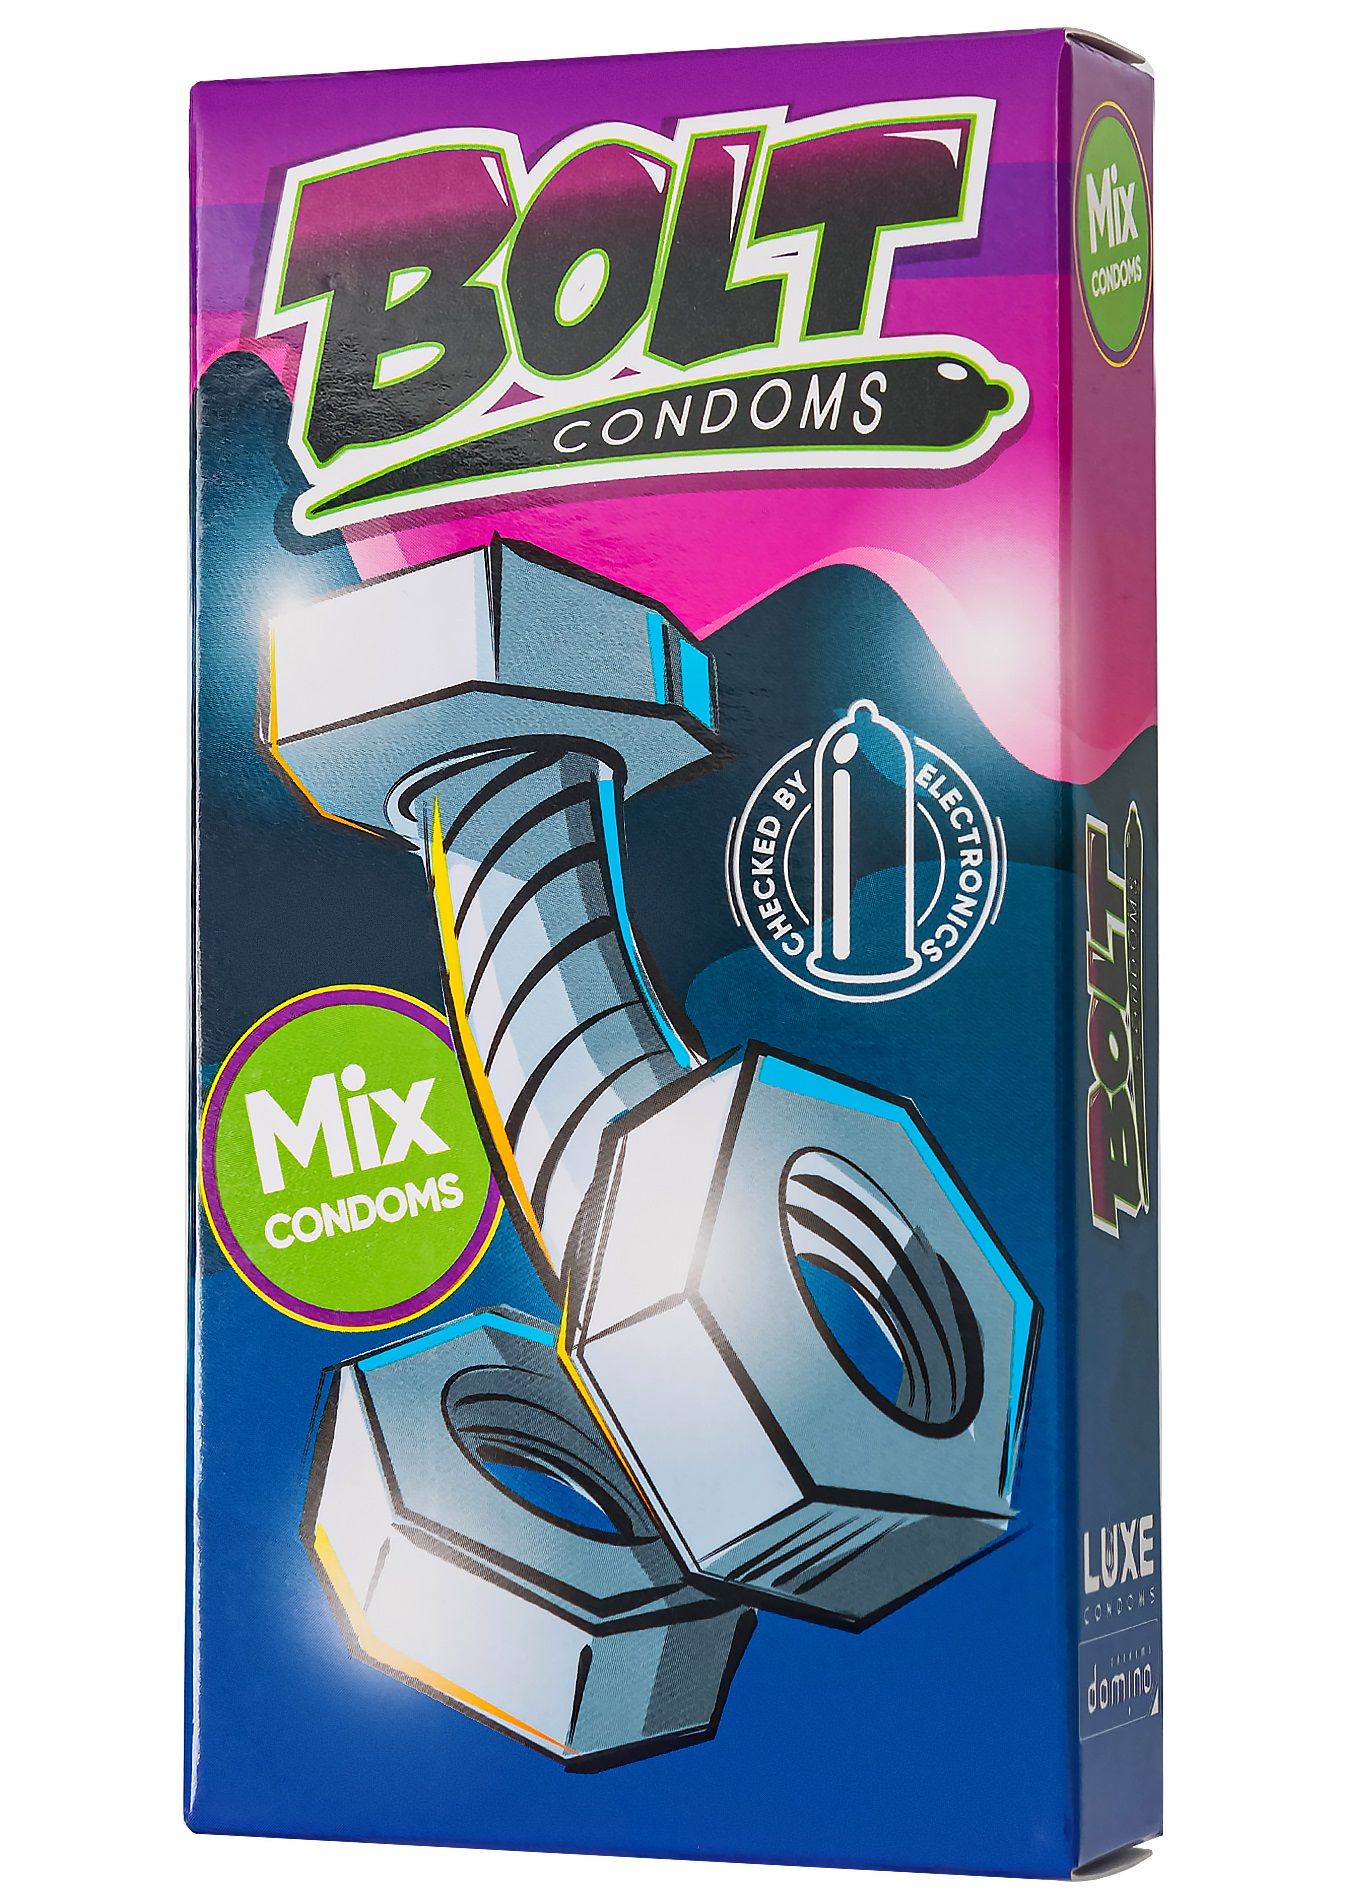 Набор Bolt Condoms - это микс презервативов в двух вариантах исполнения:<br> 1) 4 классических и 1 стимулирующий с усиками (итого 5 шт. в пачке) <br> 2) 6 шт. классических презервативов.<br><br>  Классический ассортимент: гладкий, ребристый, текстурированный, ароматизированный, XXL, с усиками.